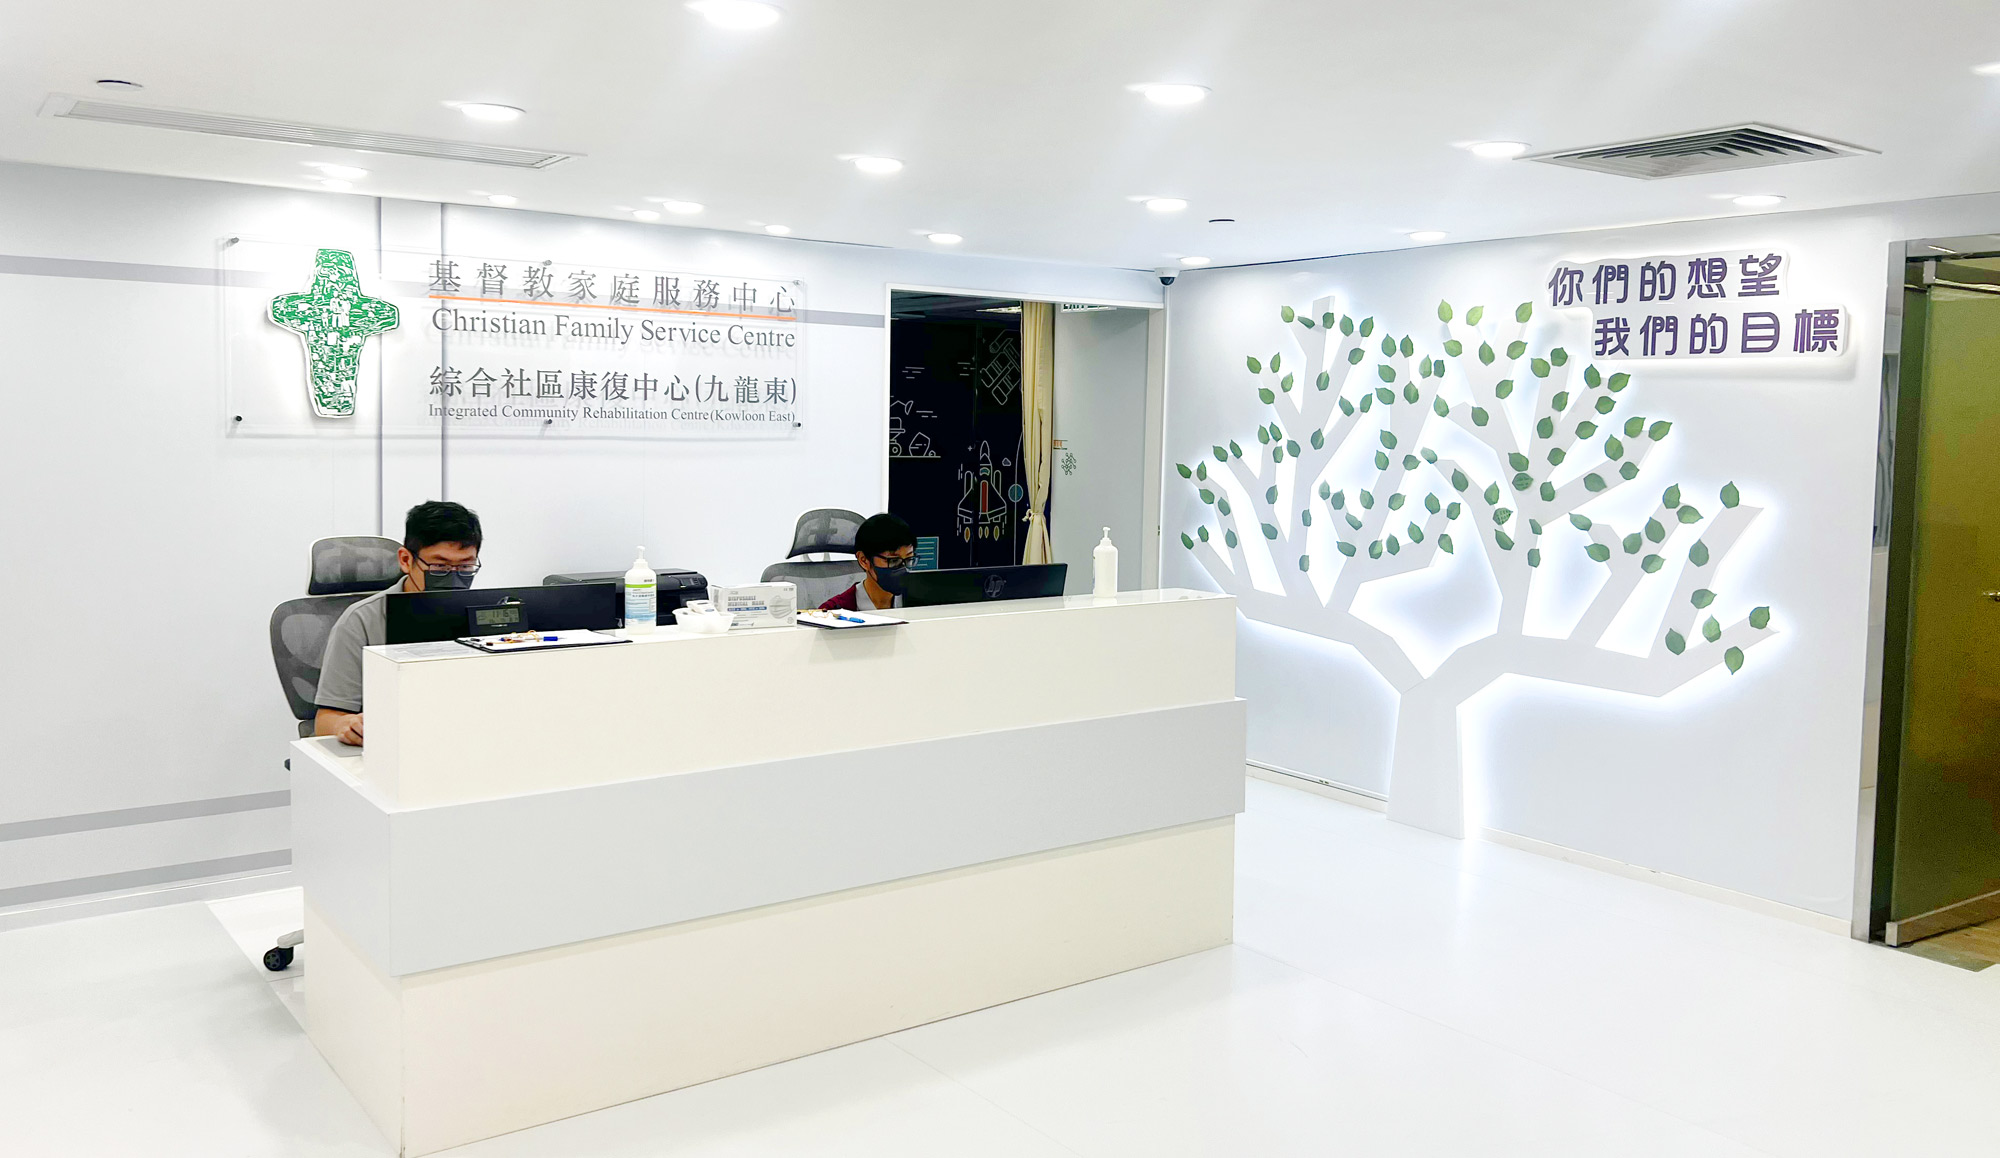 综合社区康复中心(九龙东) 正式开展服务  支援社区内的残疾人士及其照顾者